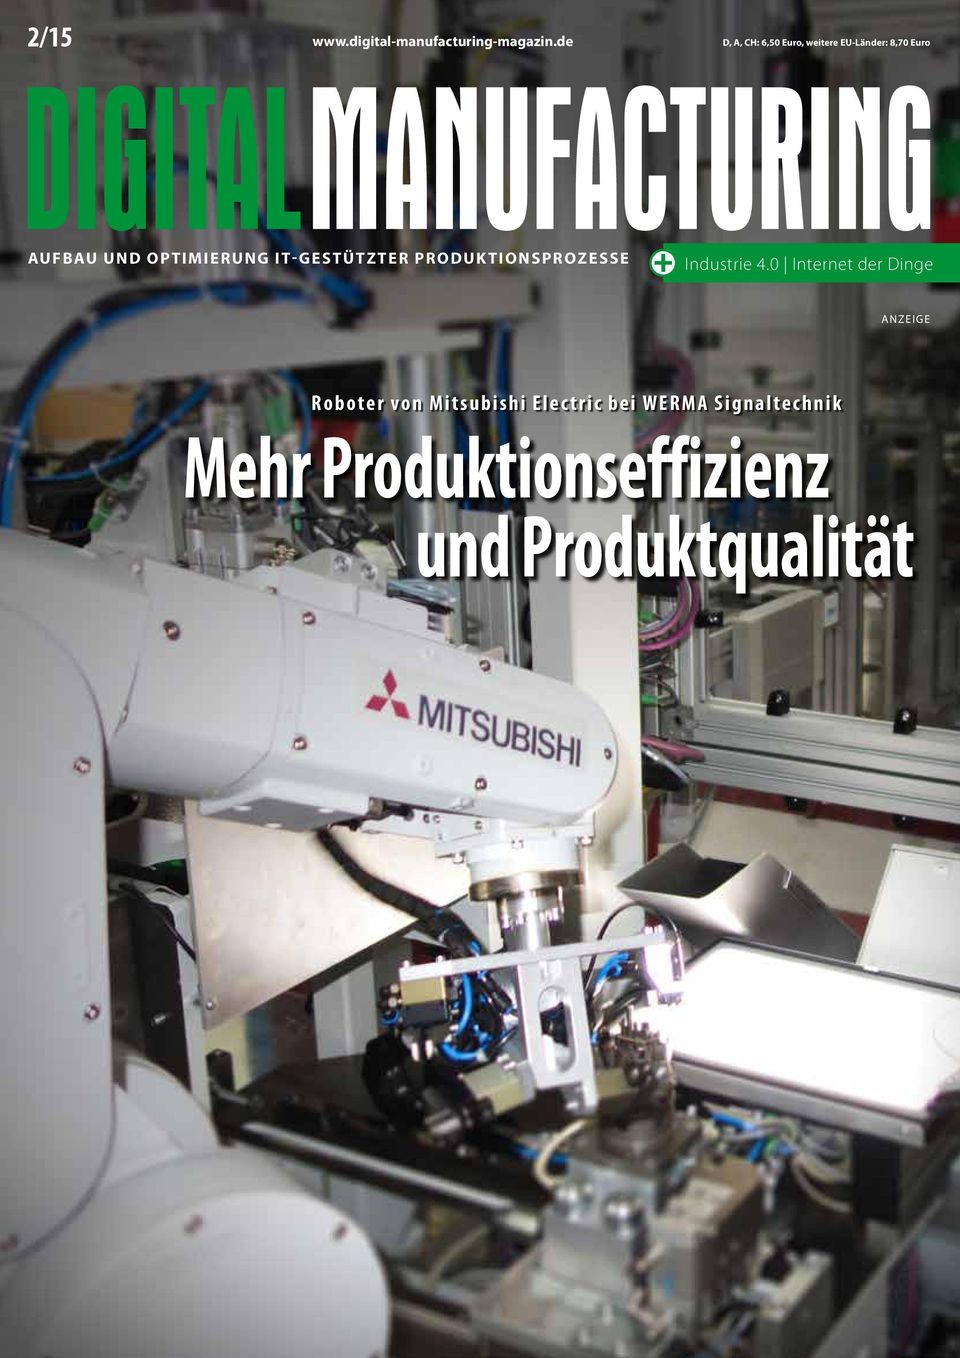 OPTIMIERUNG IT-GESTÜTZTER PRODUKTIONSPROZESSE Industrie 4.